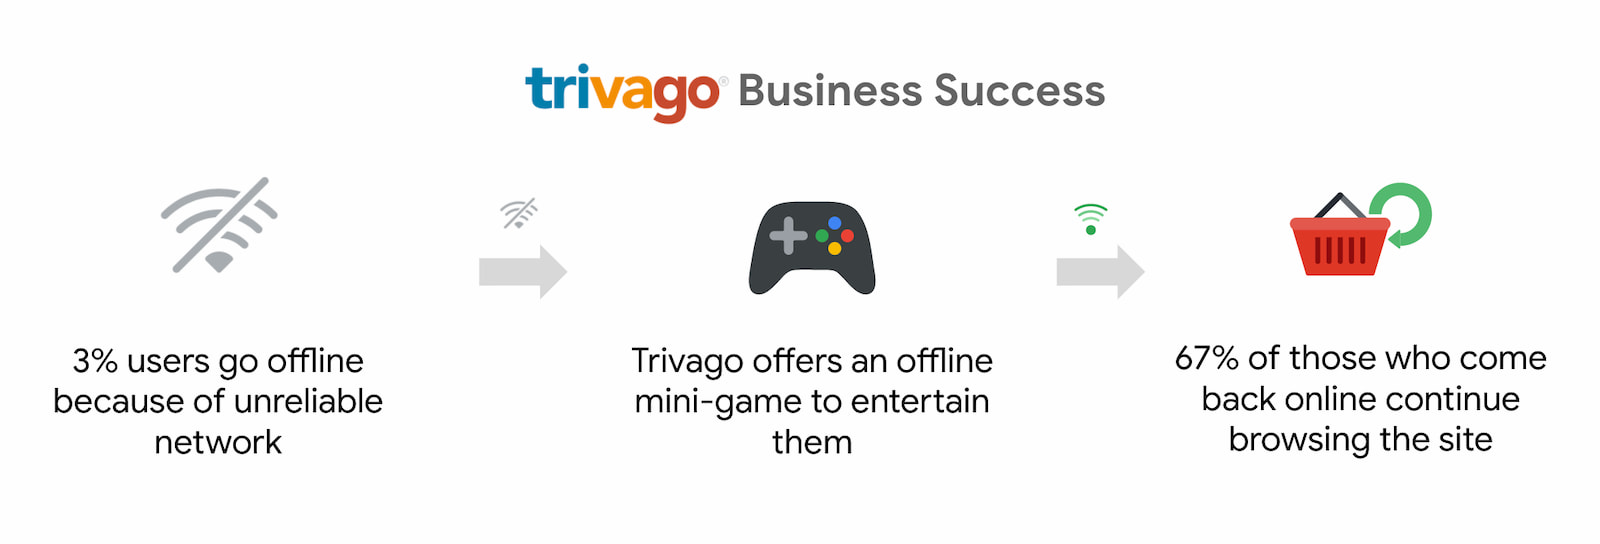 Trivago ha registrato un aumento del 67% degli utenti che sono tornati online e hanno continuato a navigare.